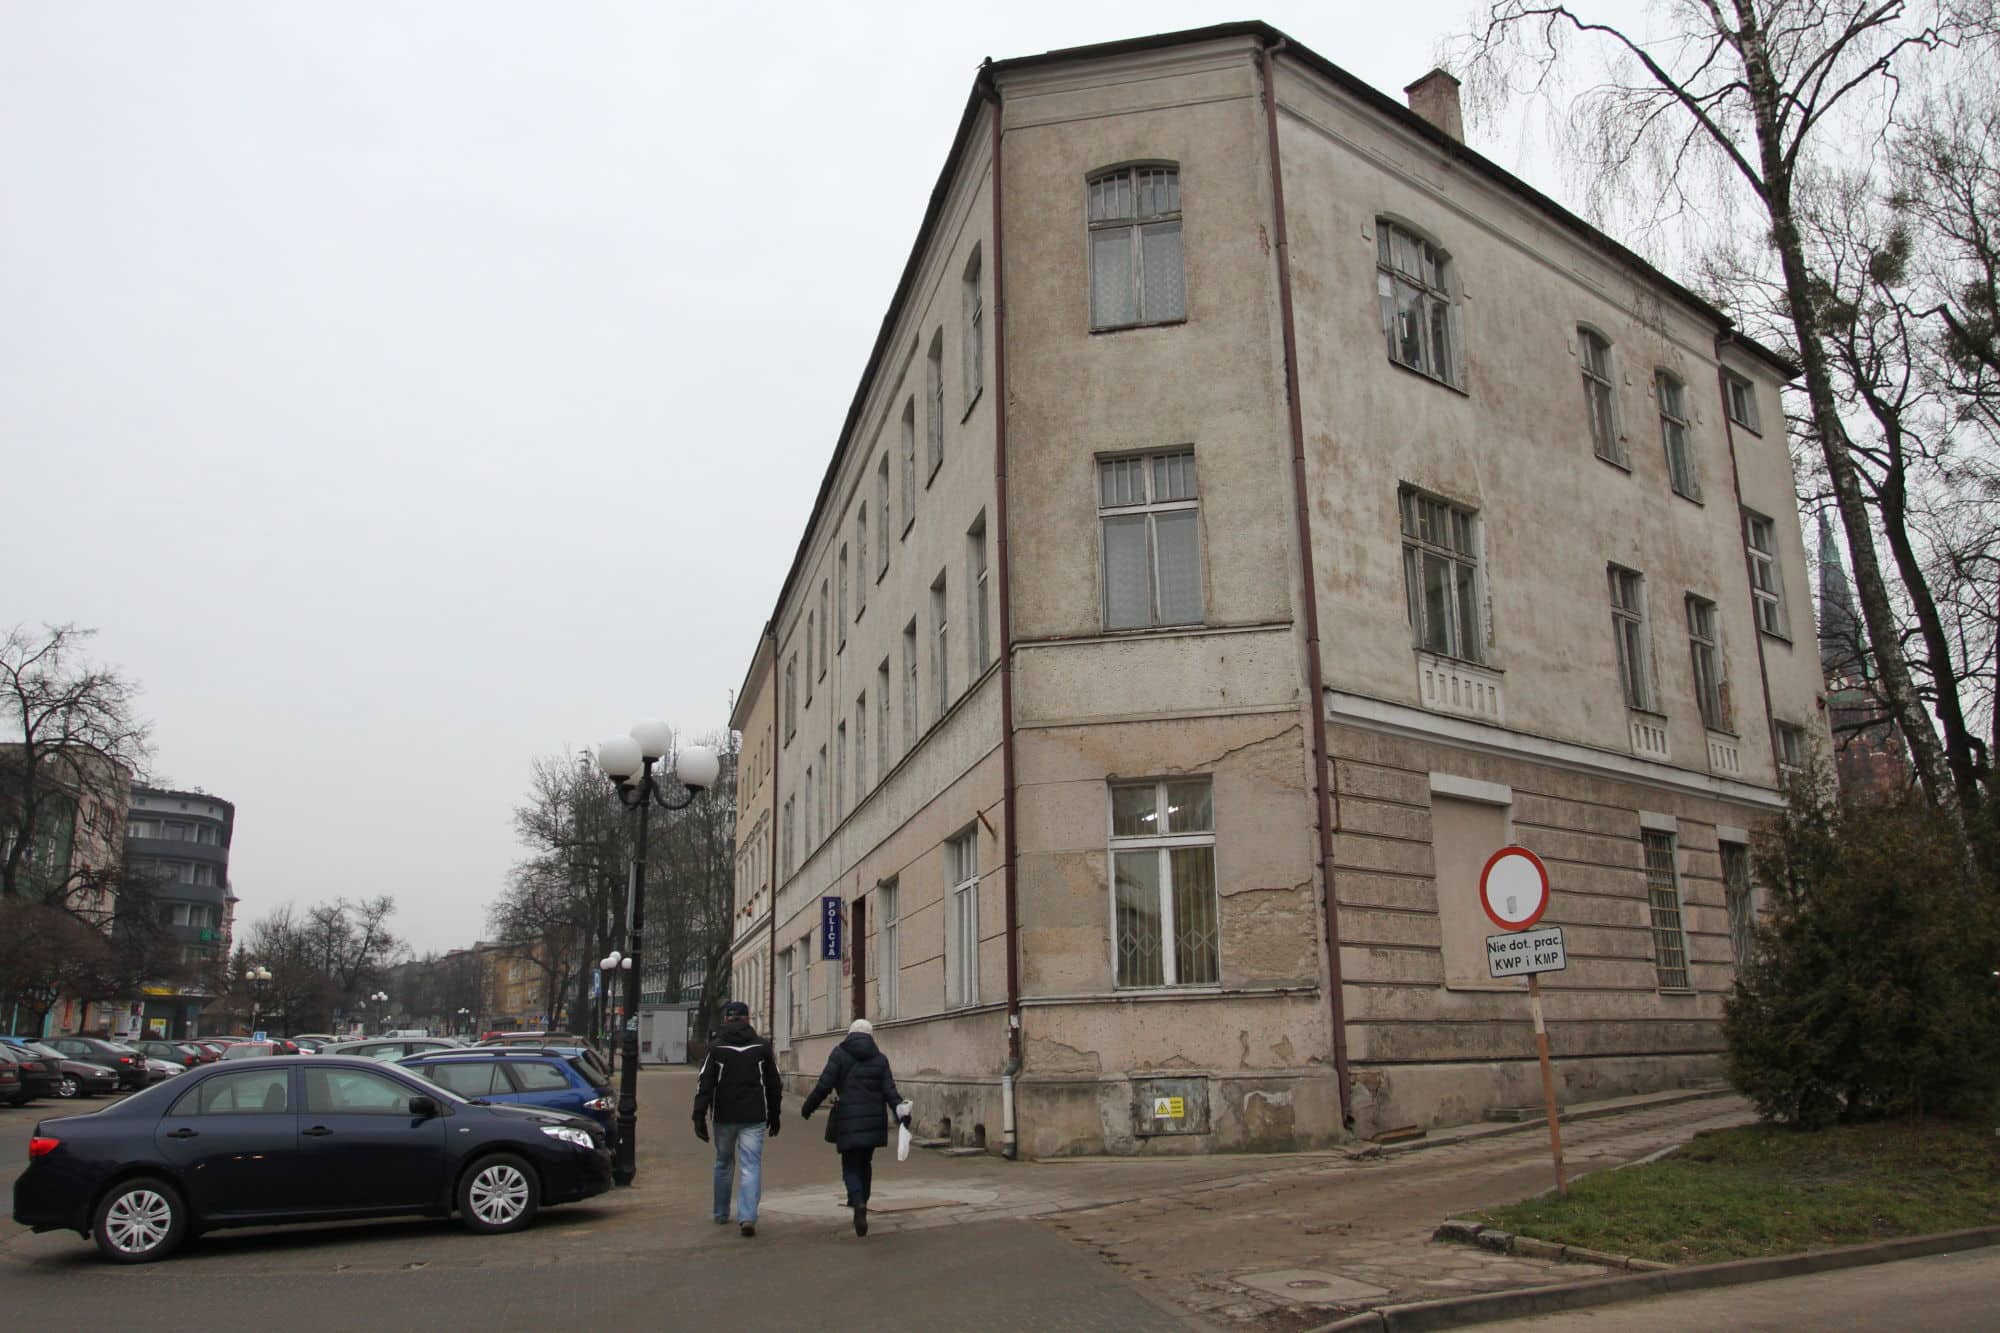 Zniknie komisariat przy ul. Dąbrowszczaków Galerie, Olsztyn, Wiadomości